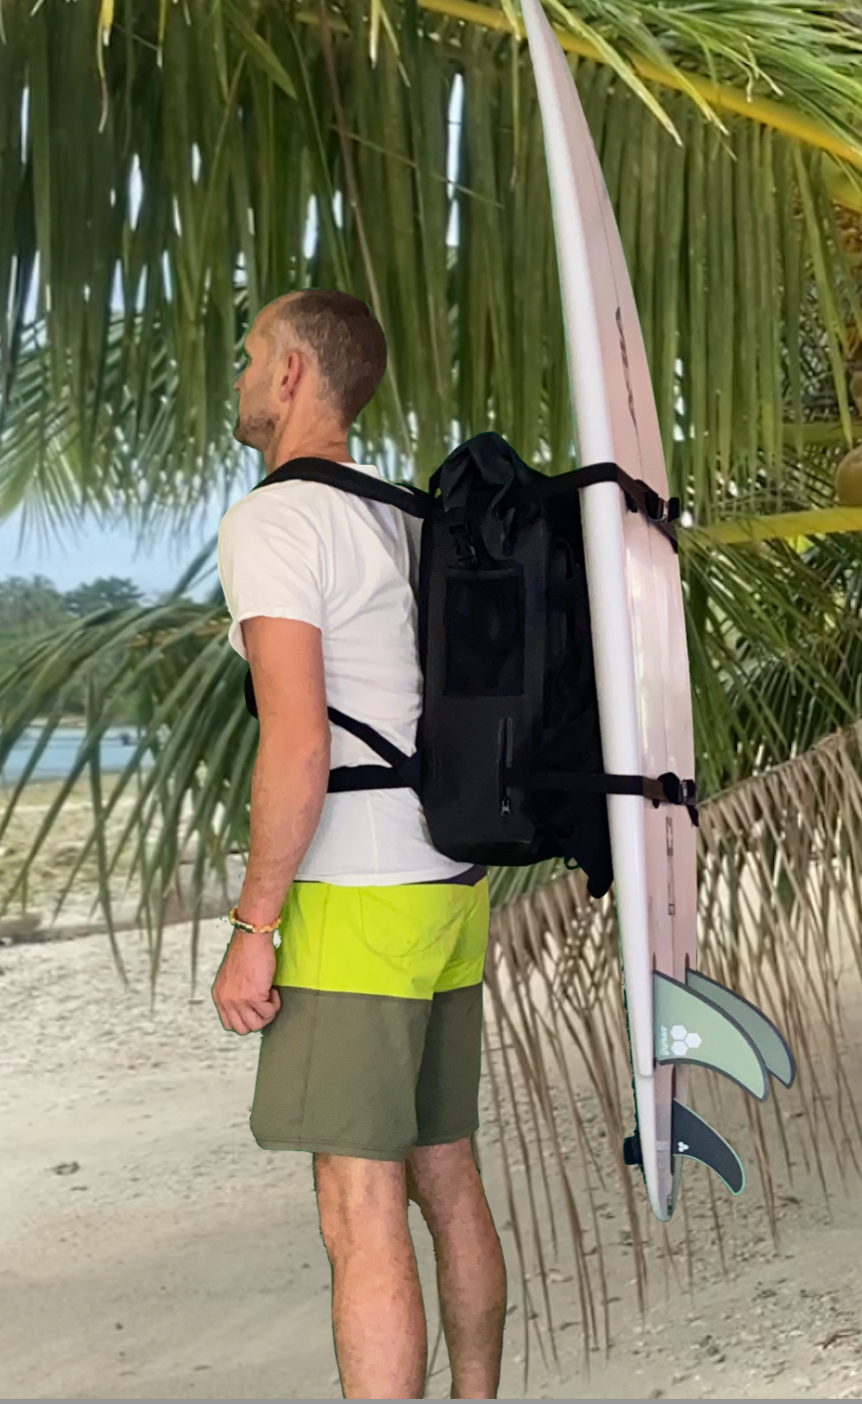 Mokan SurfPack - The Surfboard Carrying Waterproof Backpack